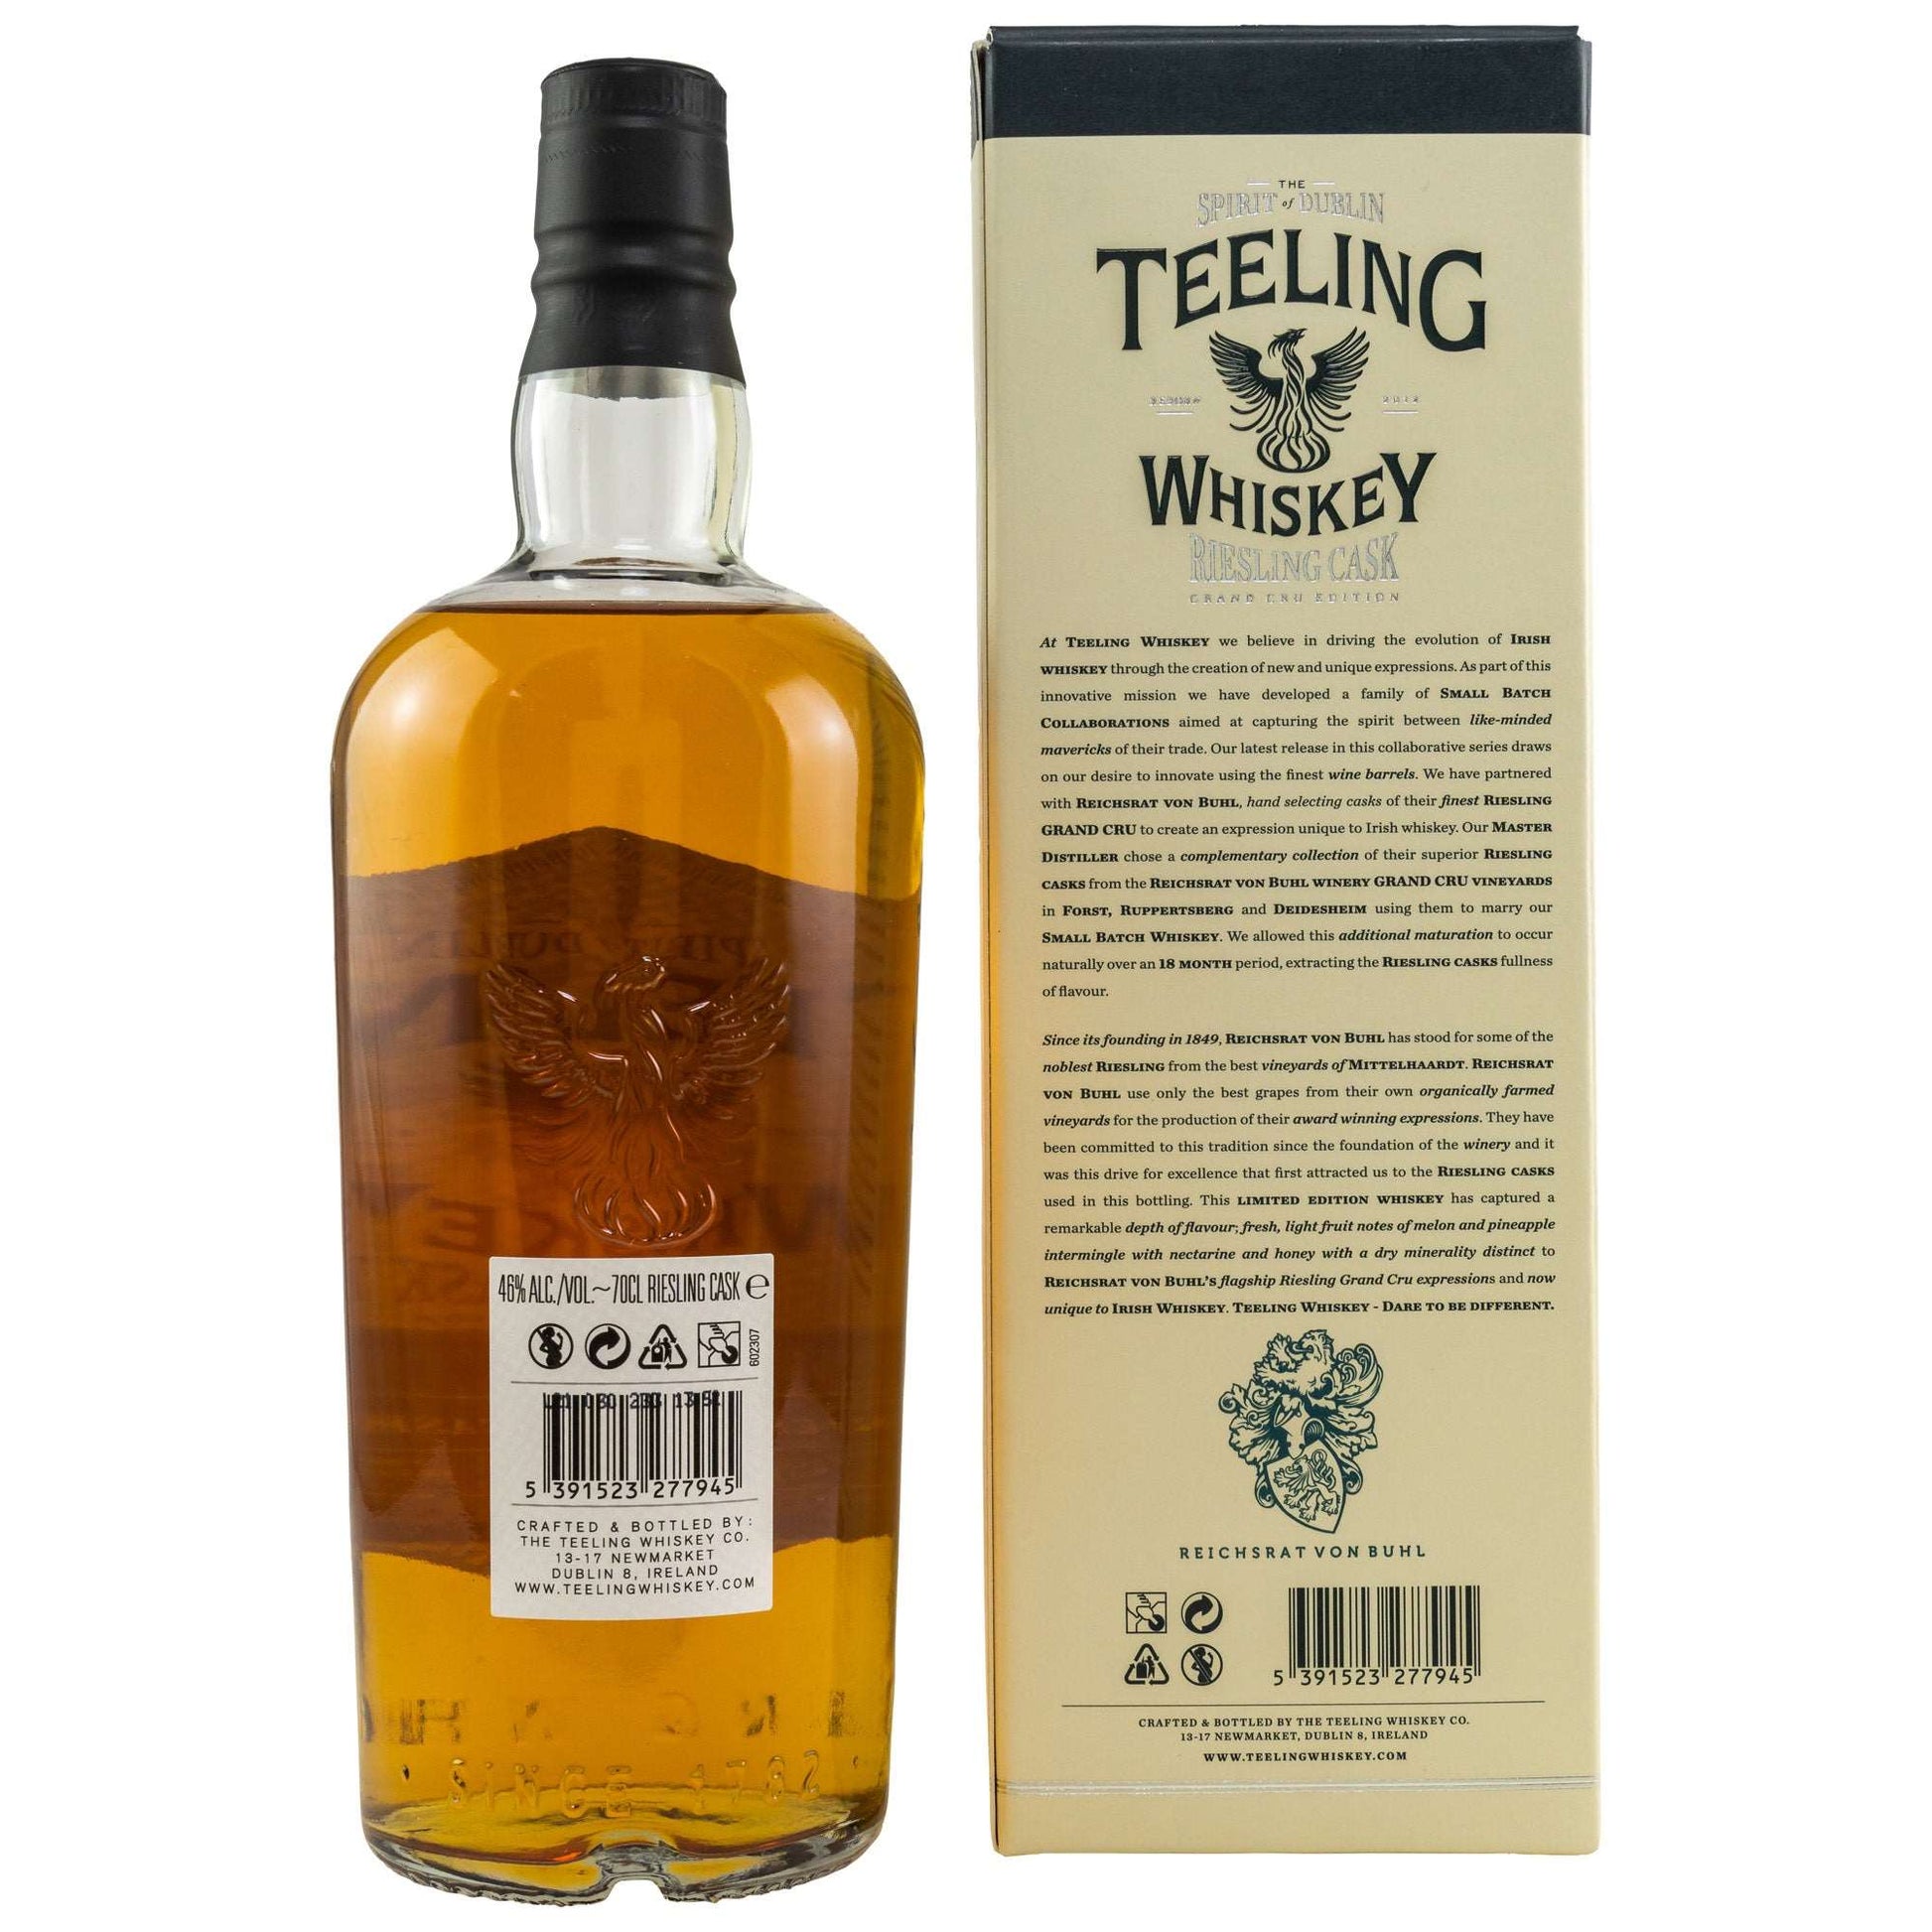 Teeling | Riesling Cask | Single Malt Irish Whiskey | 0,7l | 46%GET A BOTTLE